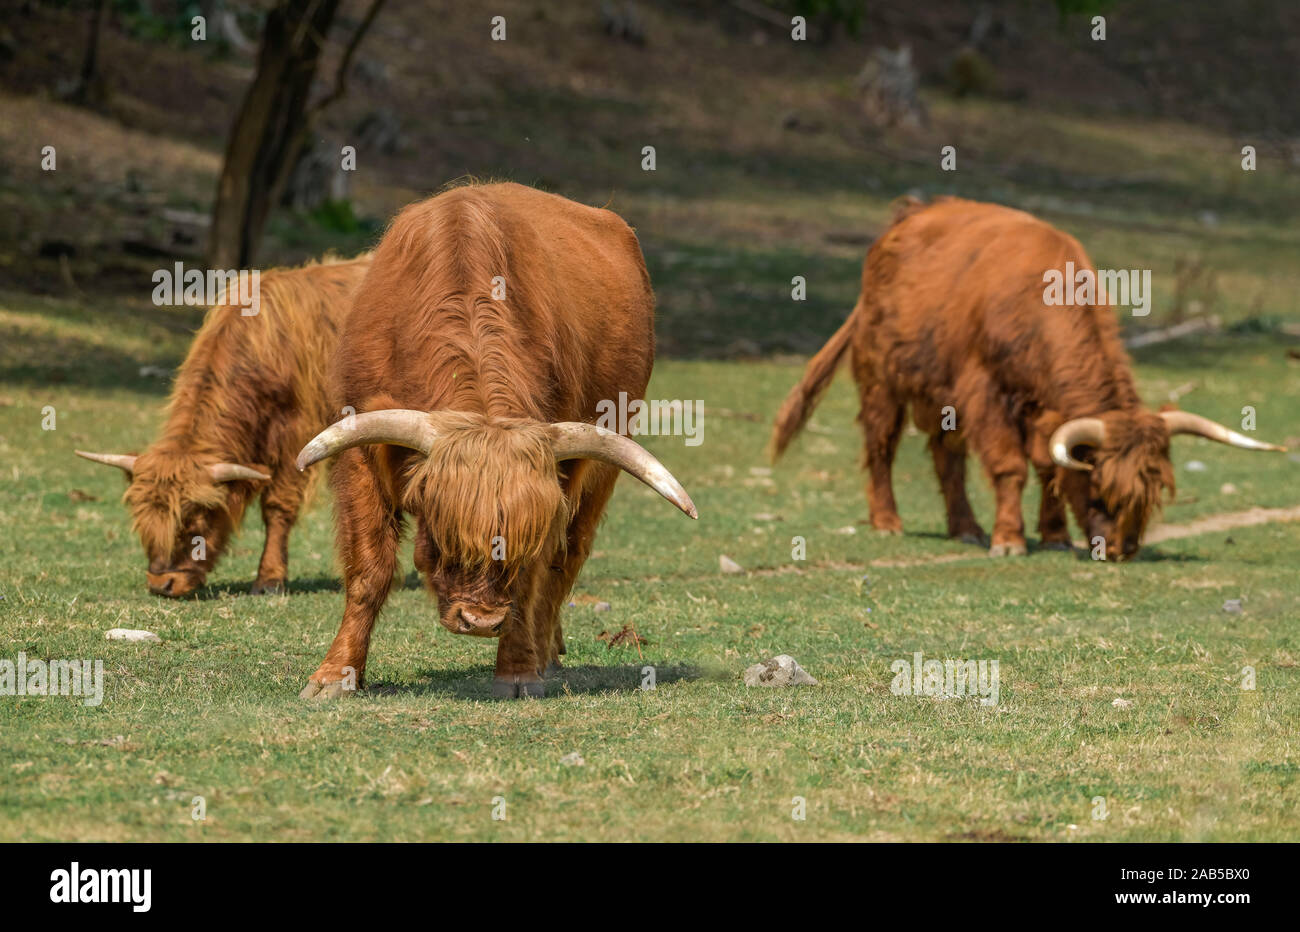 Schottisches Hochlandrind (Highland cattle), Sachsen-Anhalt, Allemagne Banque D'Images